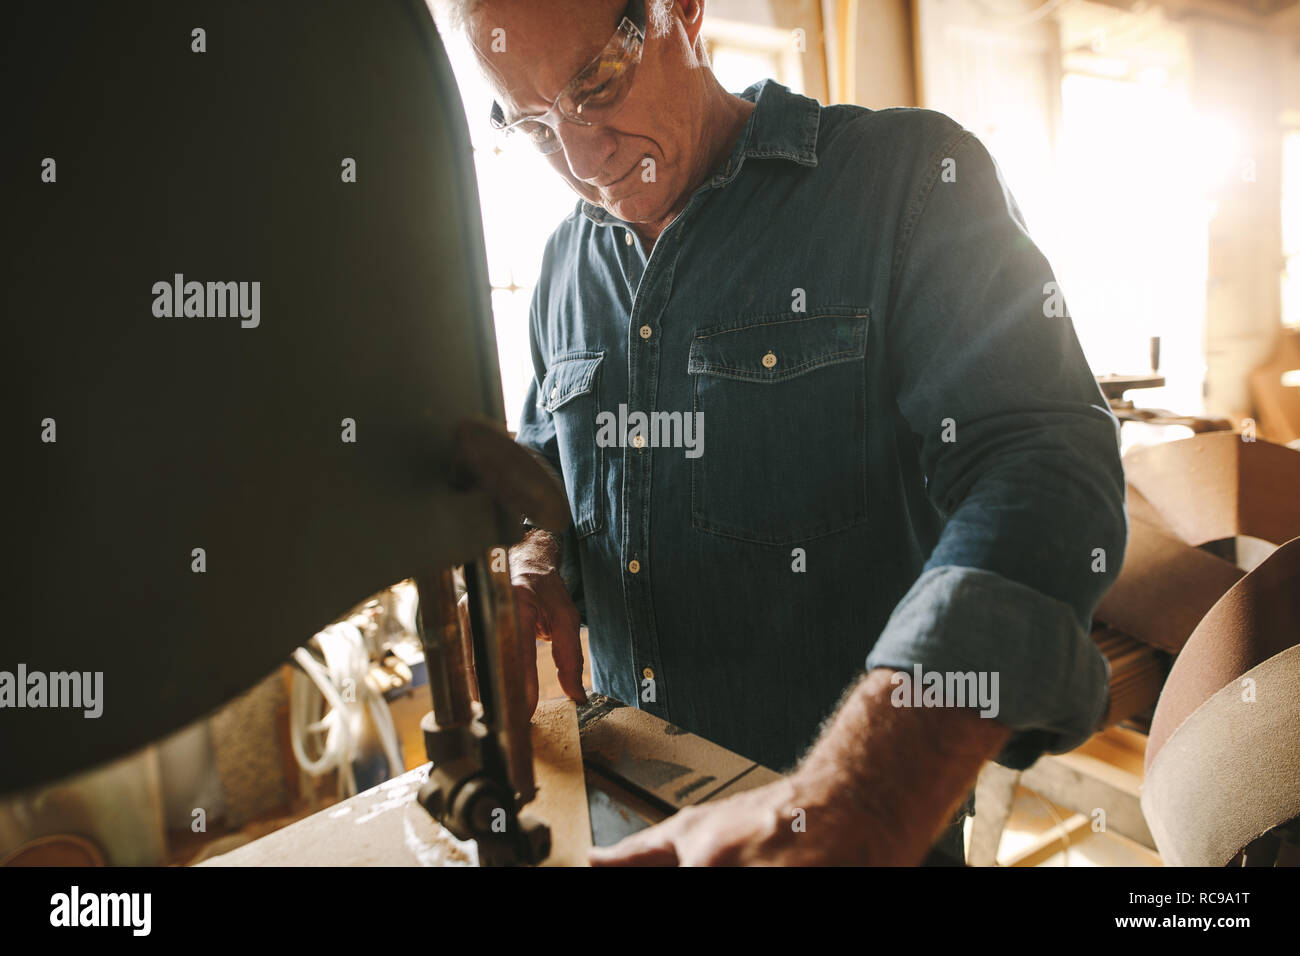 Ältere männliche Tischler arbeiten an bandsäge Maschine Schneiden von Holz in seiner Werkstatt. Tischler Schneiden von Holz auf der Maschine in der Schreinerei. Stockfoto